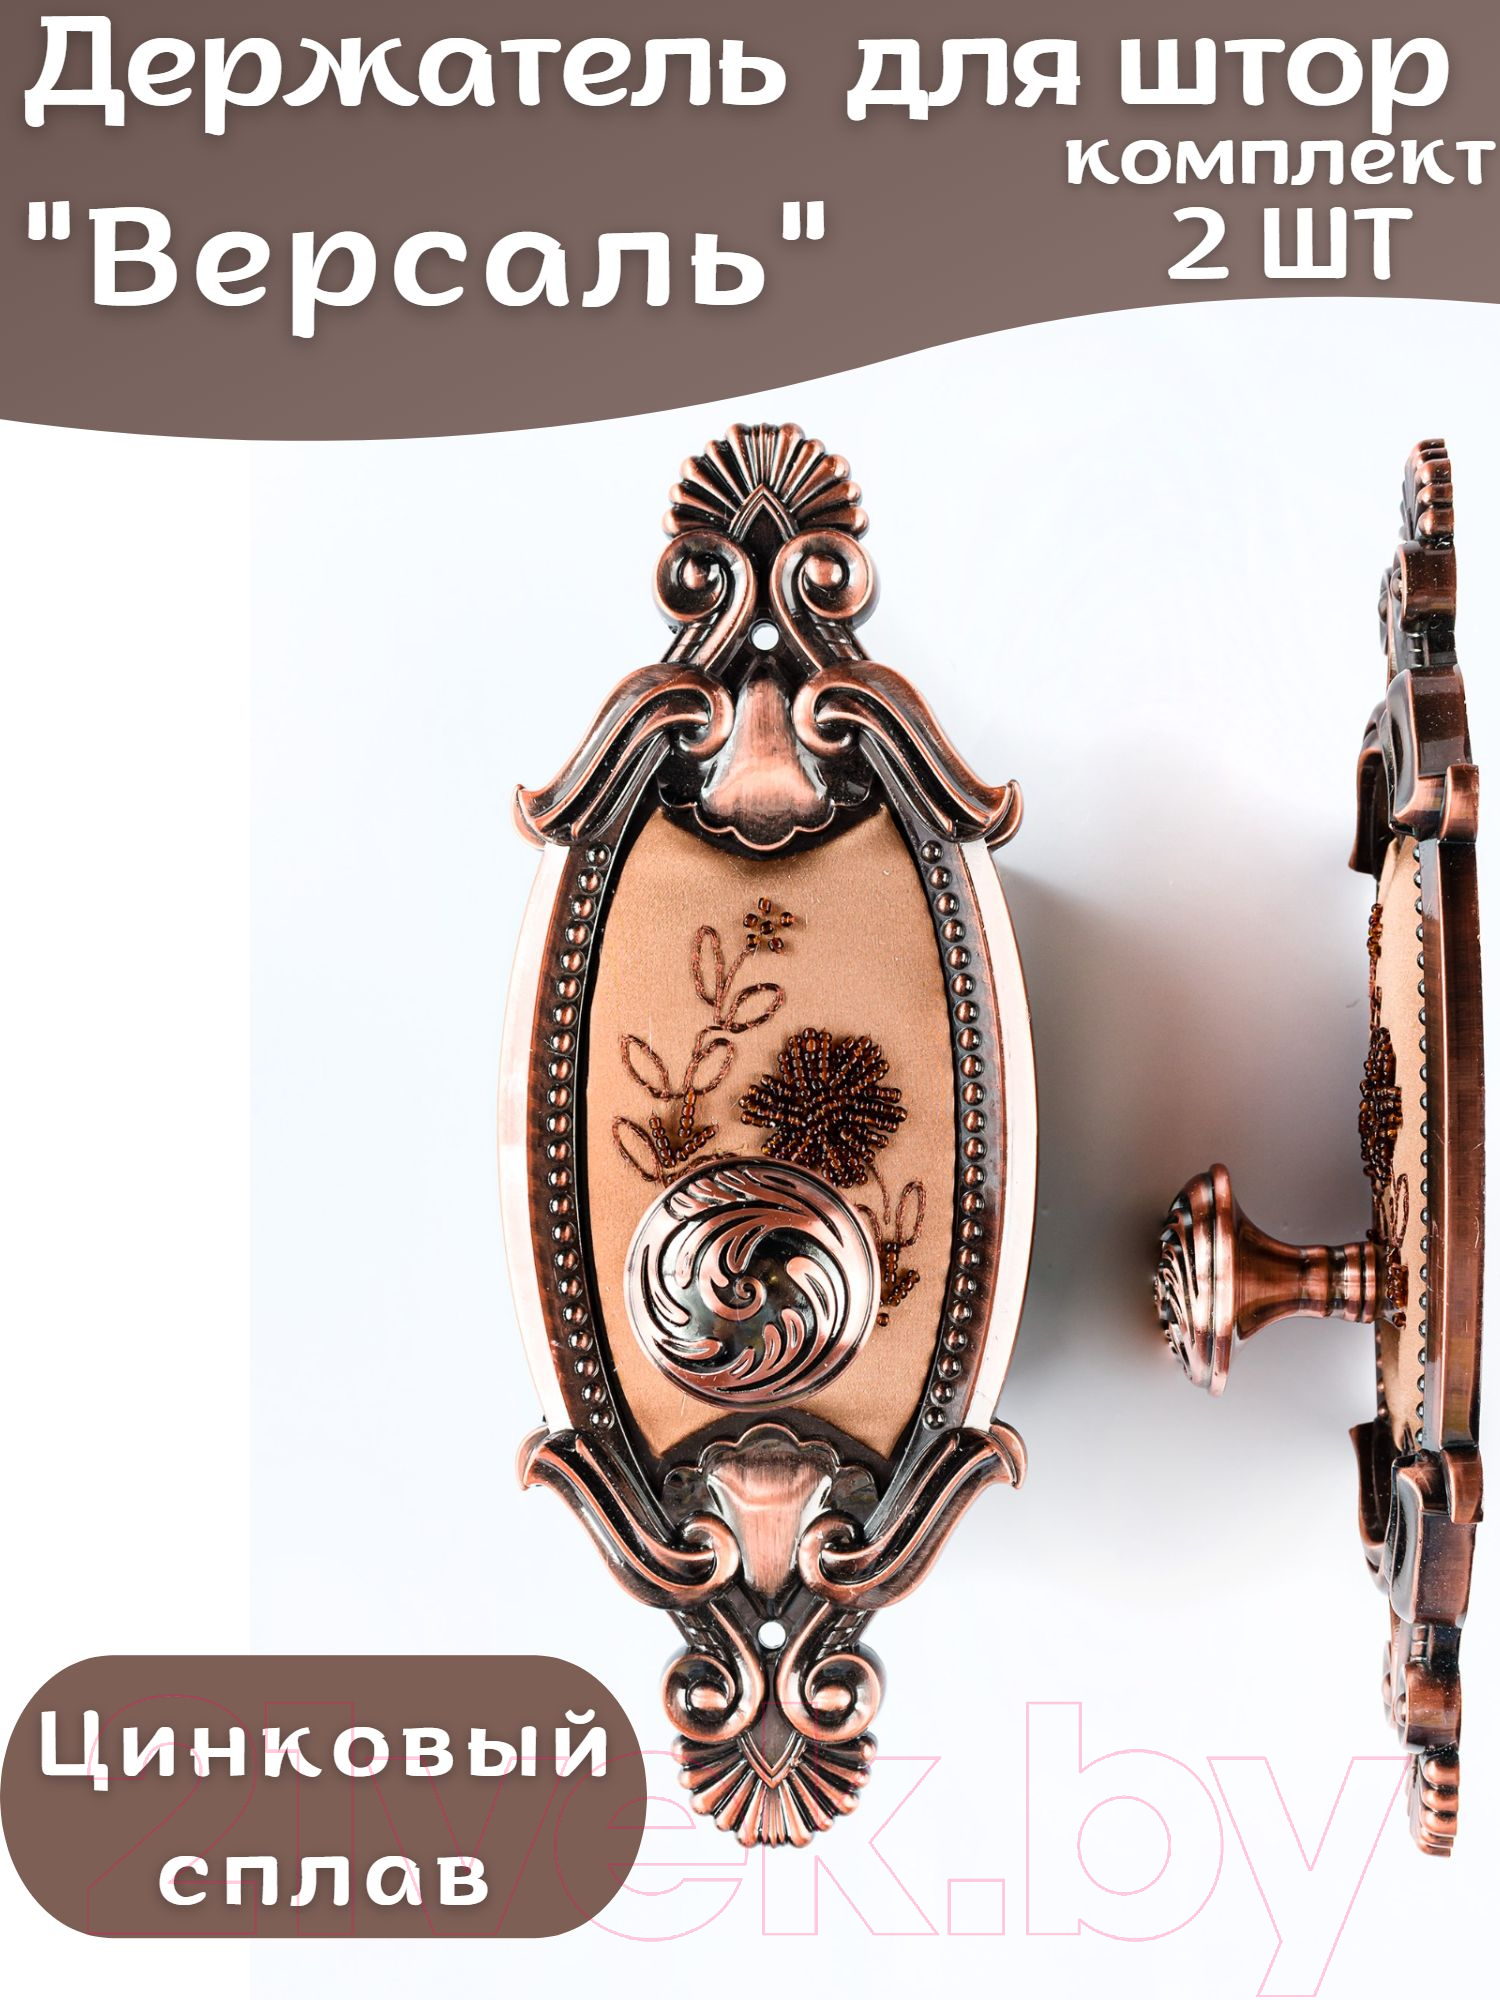 Комплект держателей для штор Merry Bear Home Decor Версаль JCB116C